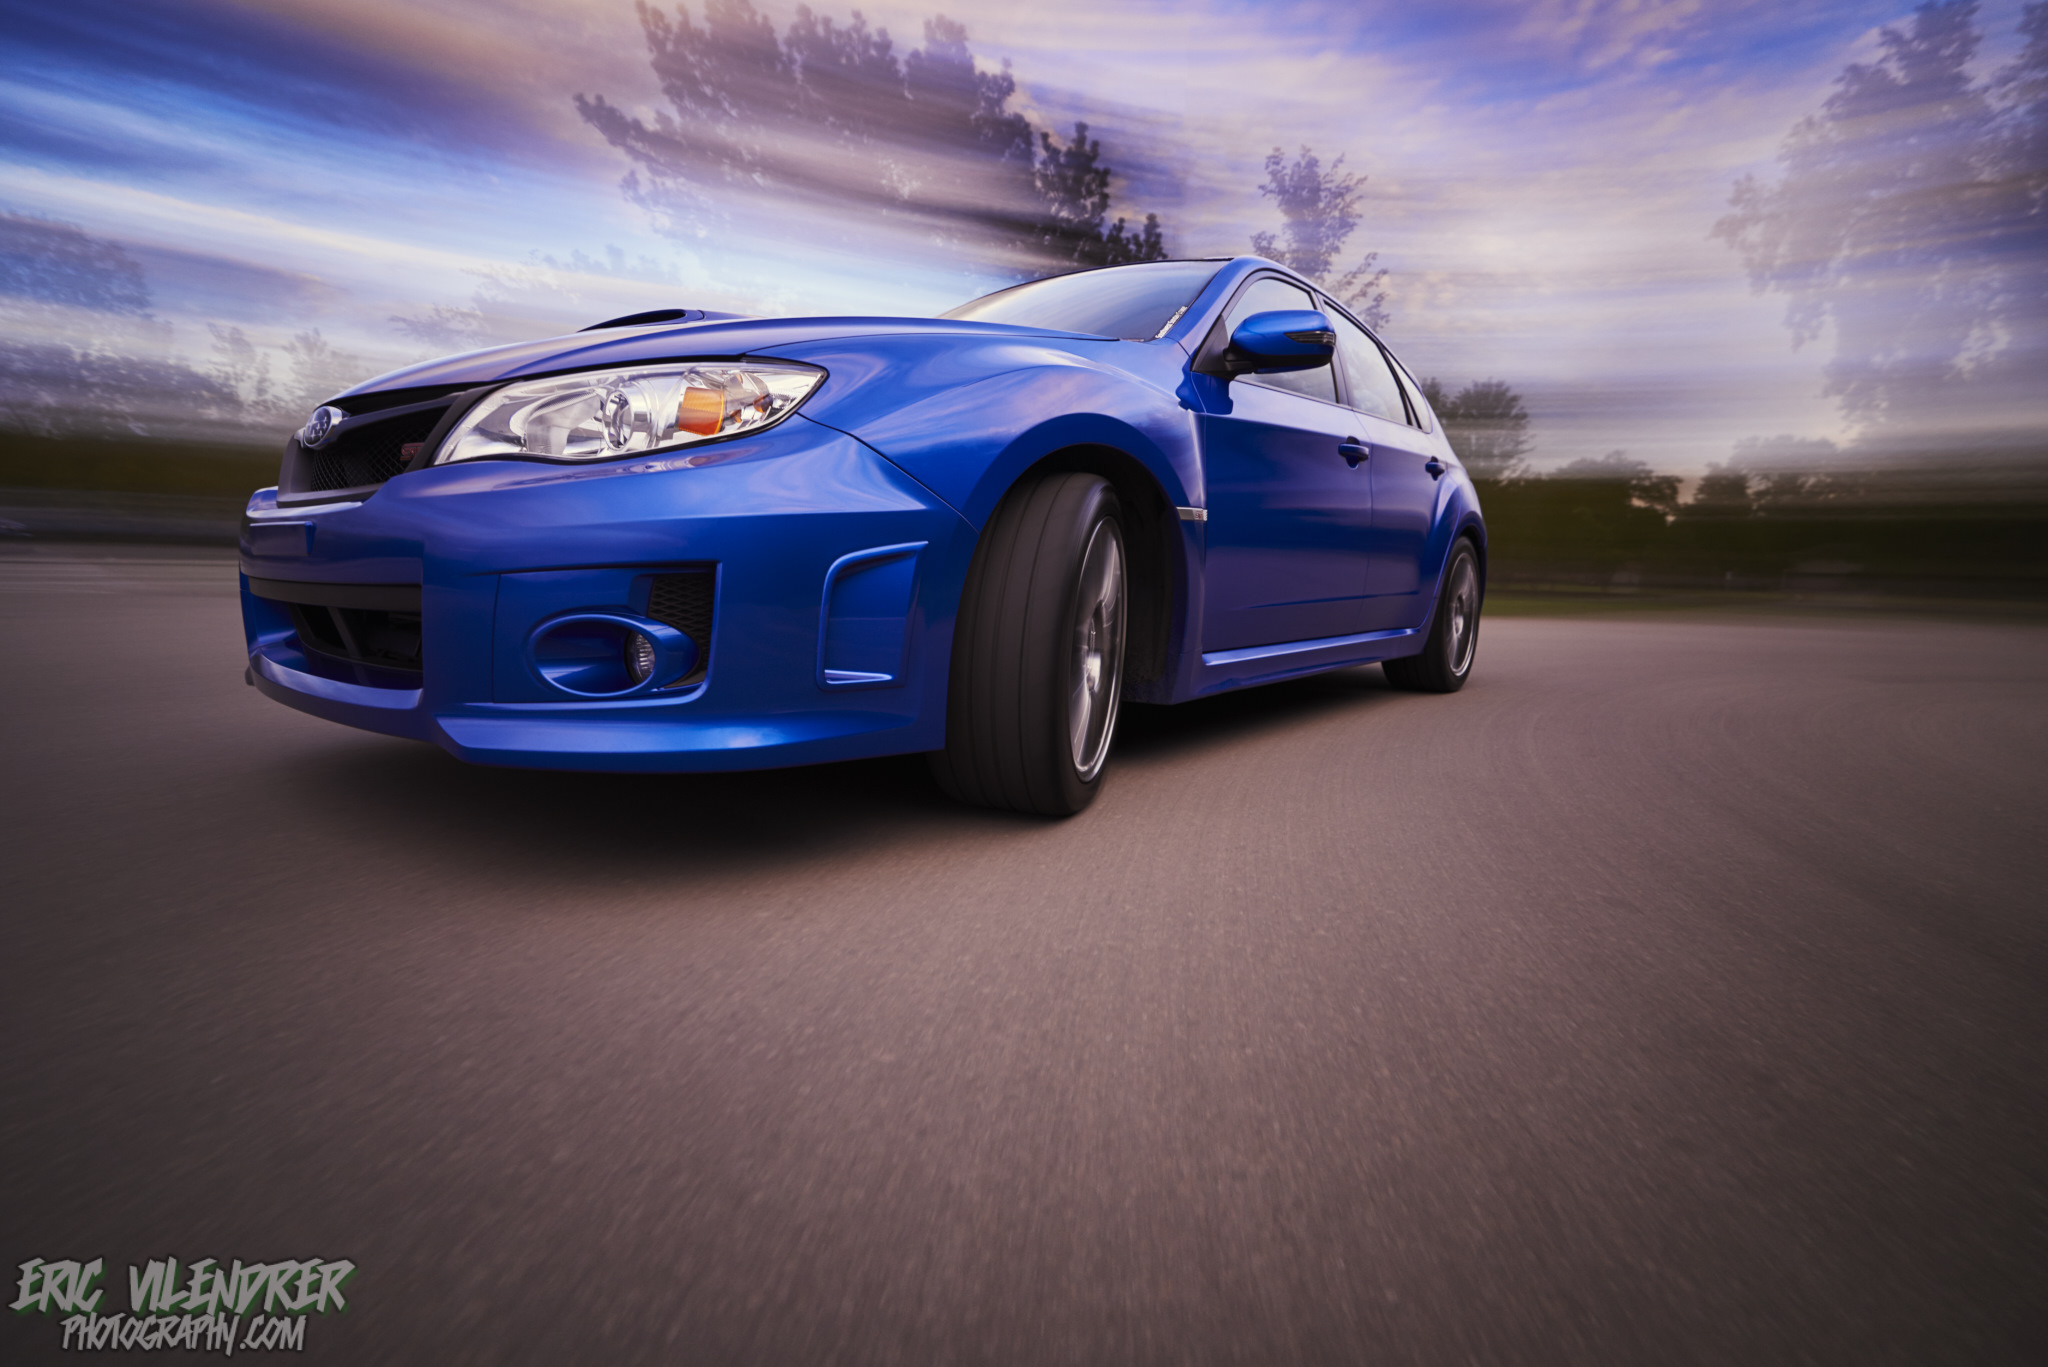 Descarga gratuita de fondo de pantalla para móvil de Subaru Impreza, Subaru, Vehículos.